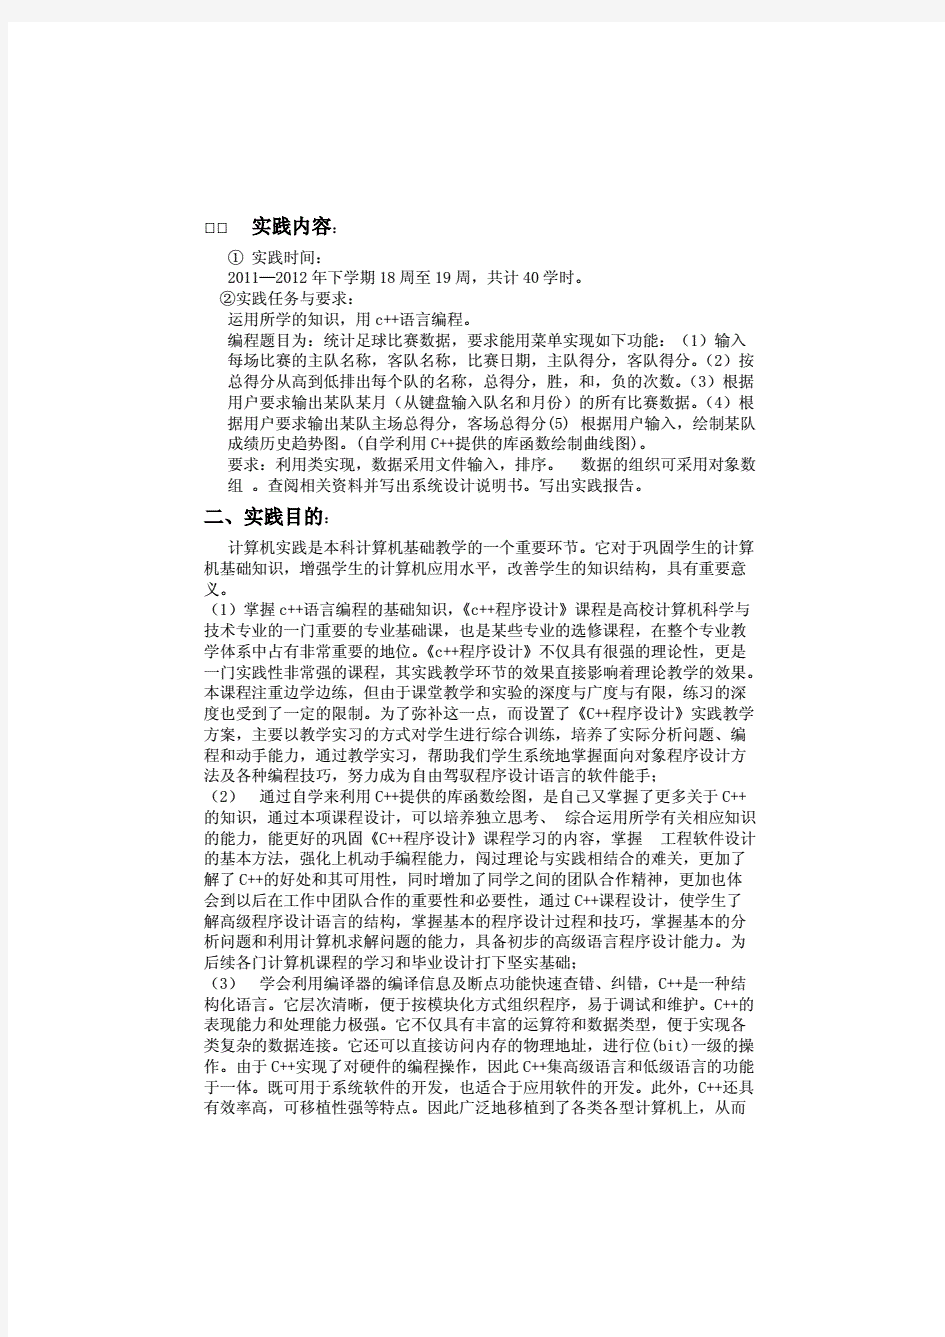 中南大学李力老师C语言程序设计报告